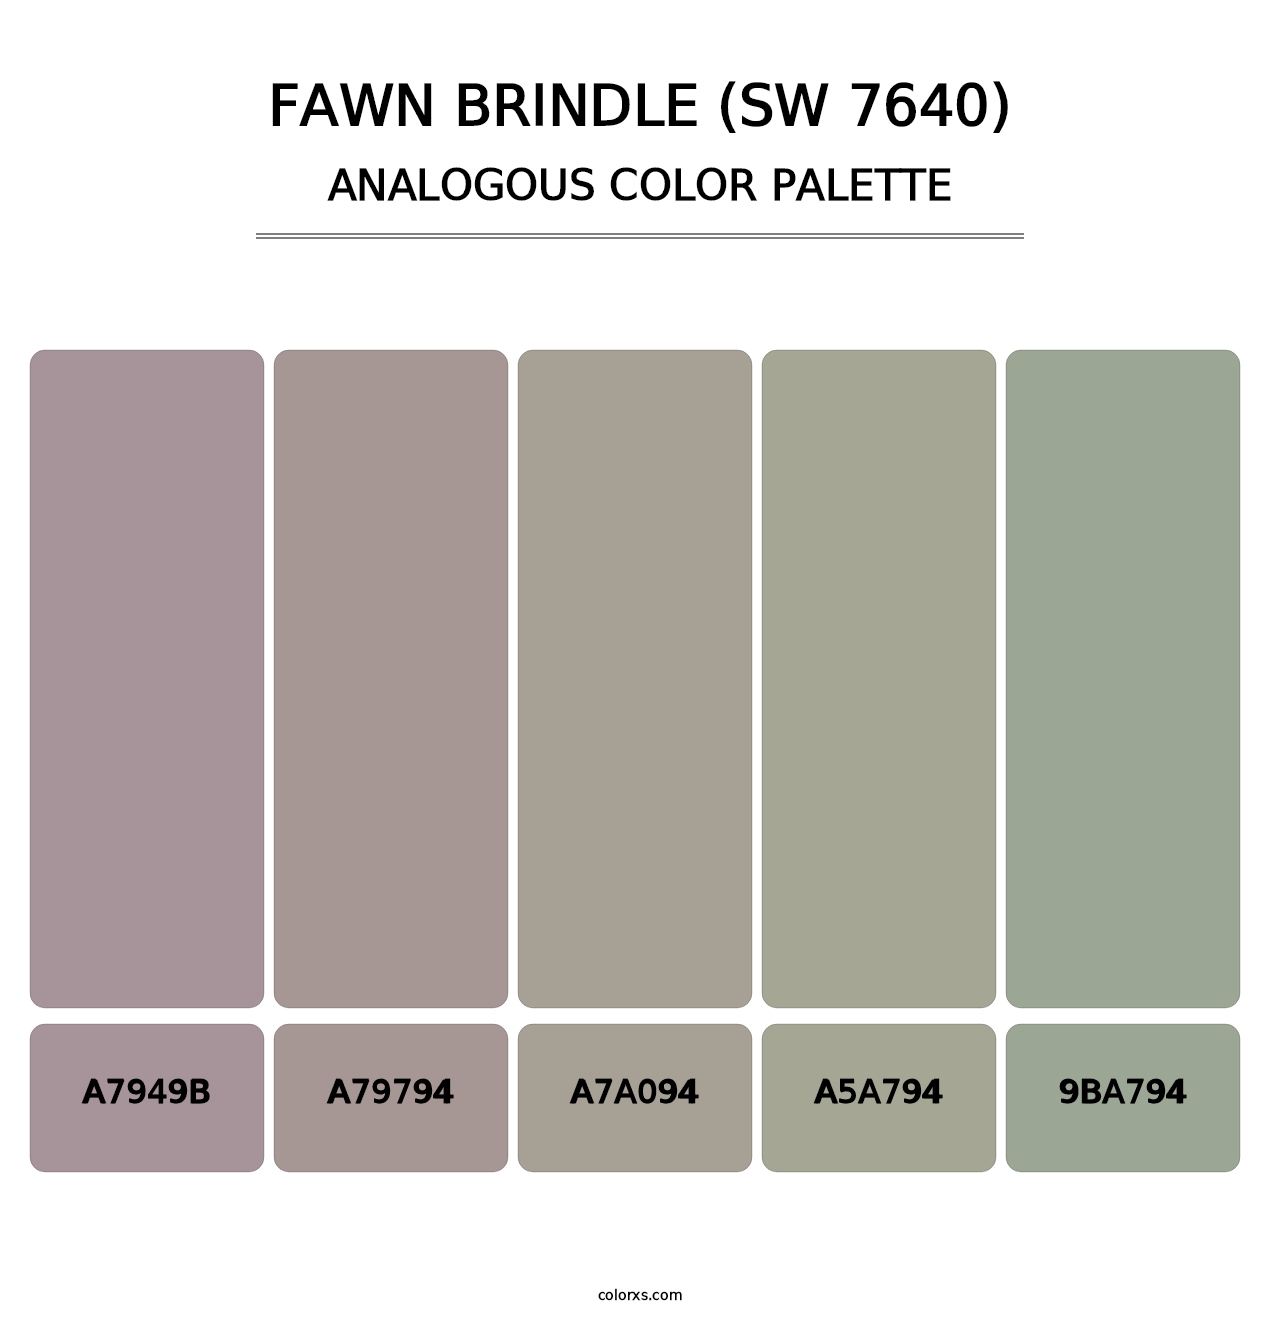 Fawn Brindle (SW 7640) - Analogous Color Palette